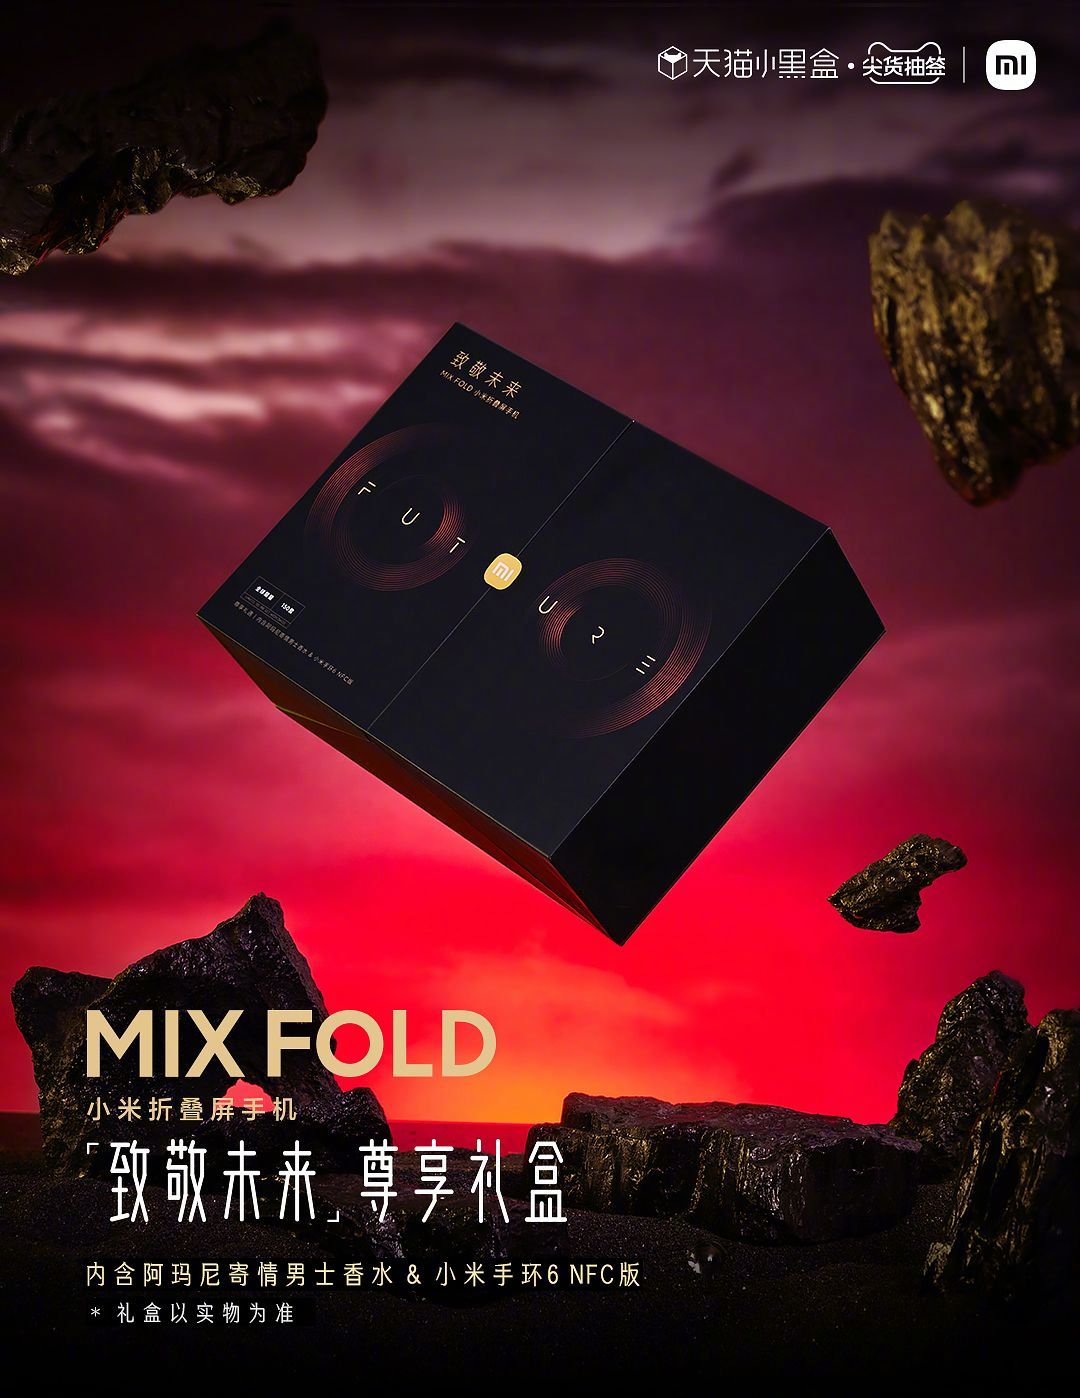  Xiaomi Mi Mix Fold в подарочном издании Xiaomi  - pahnet_innovaciami_xiaomi_predlozhila_podarochnoe_izdanie_mi_mix_fold_1